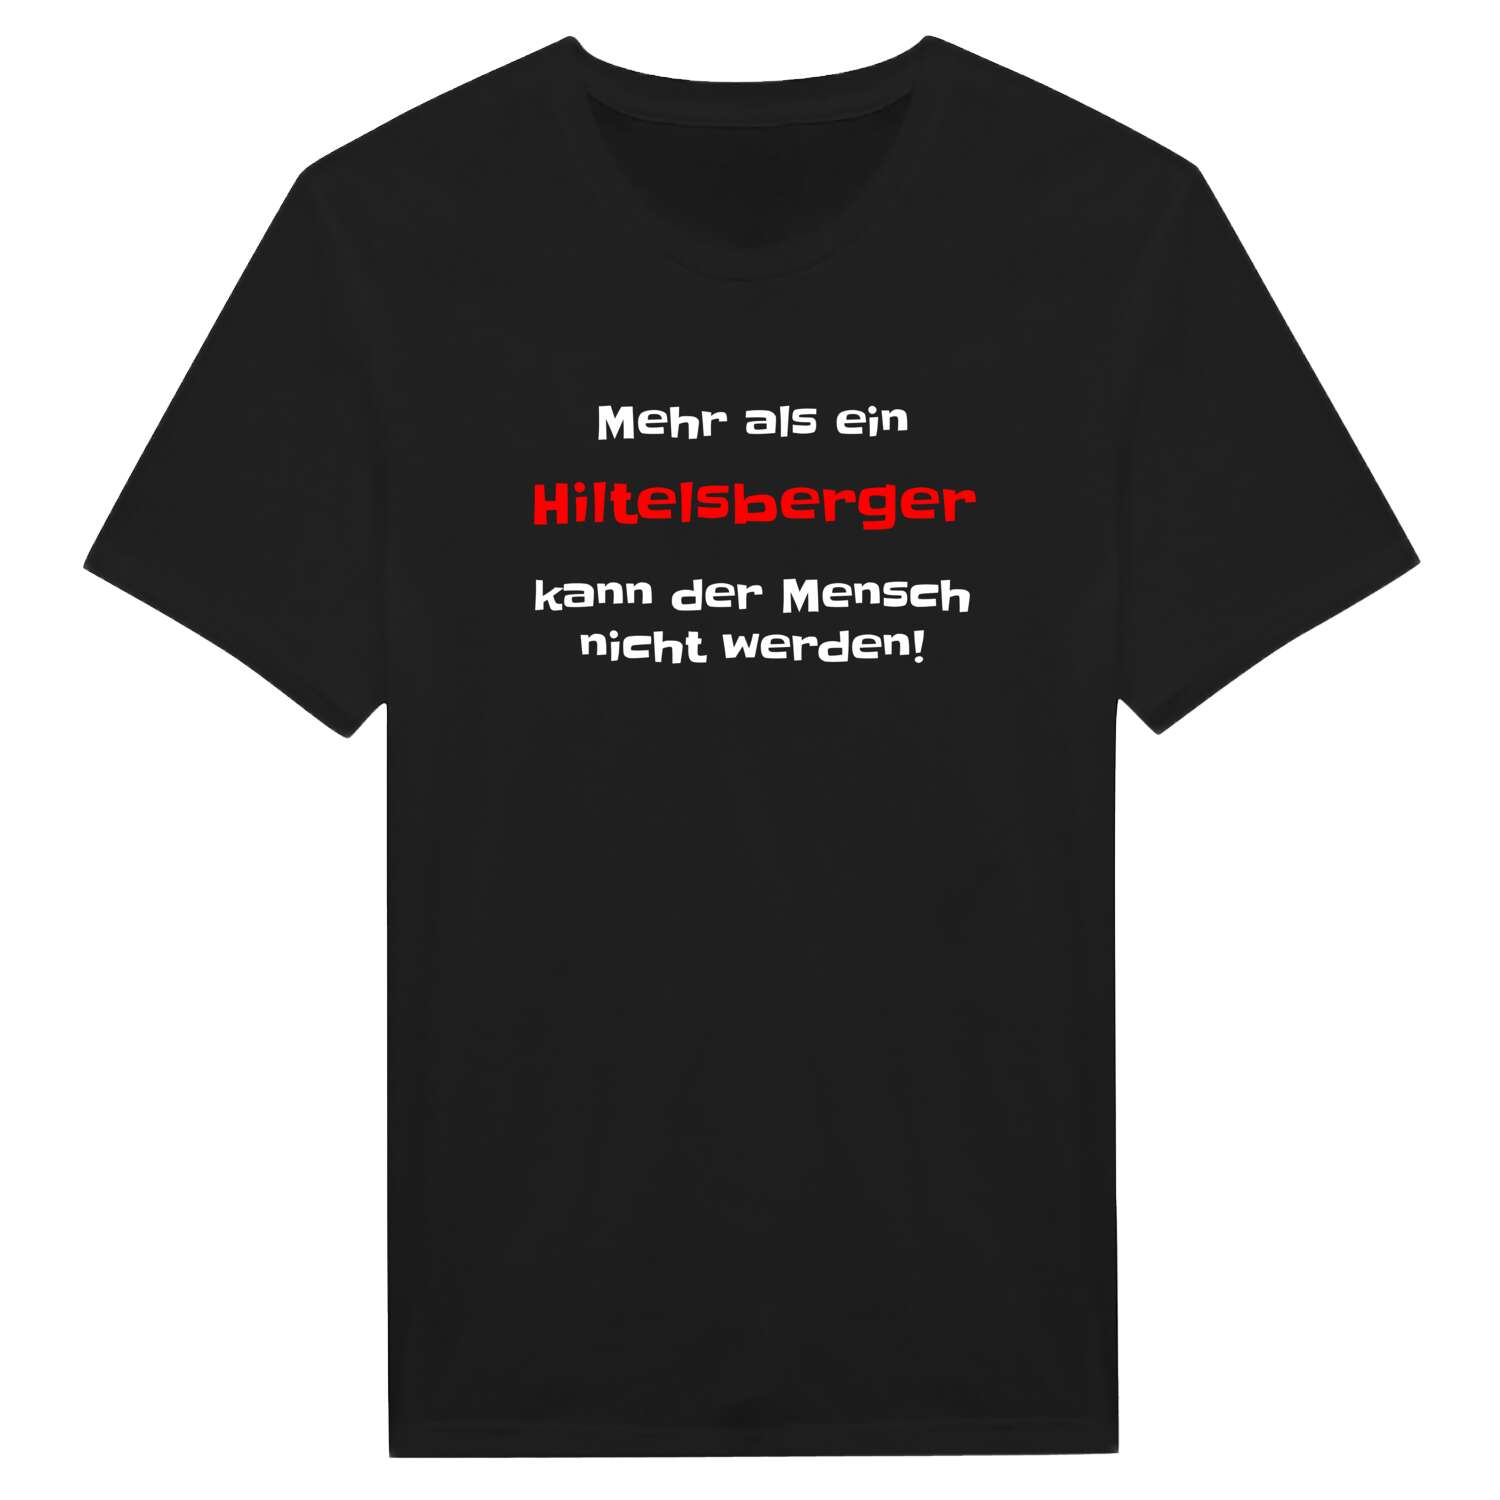 Hiltelsberg T-Shirt »Mehr als ein«